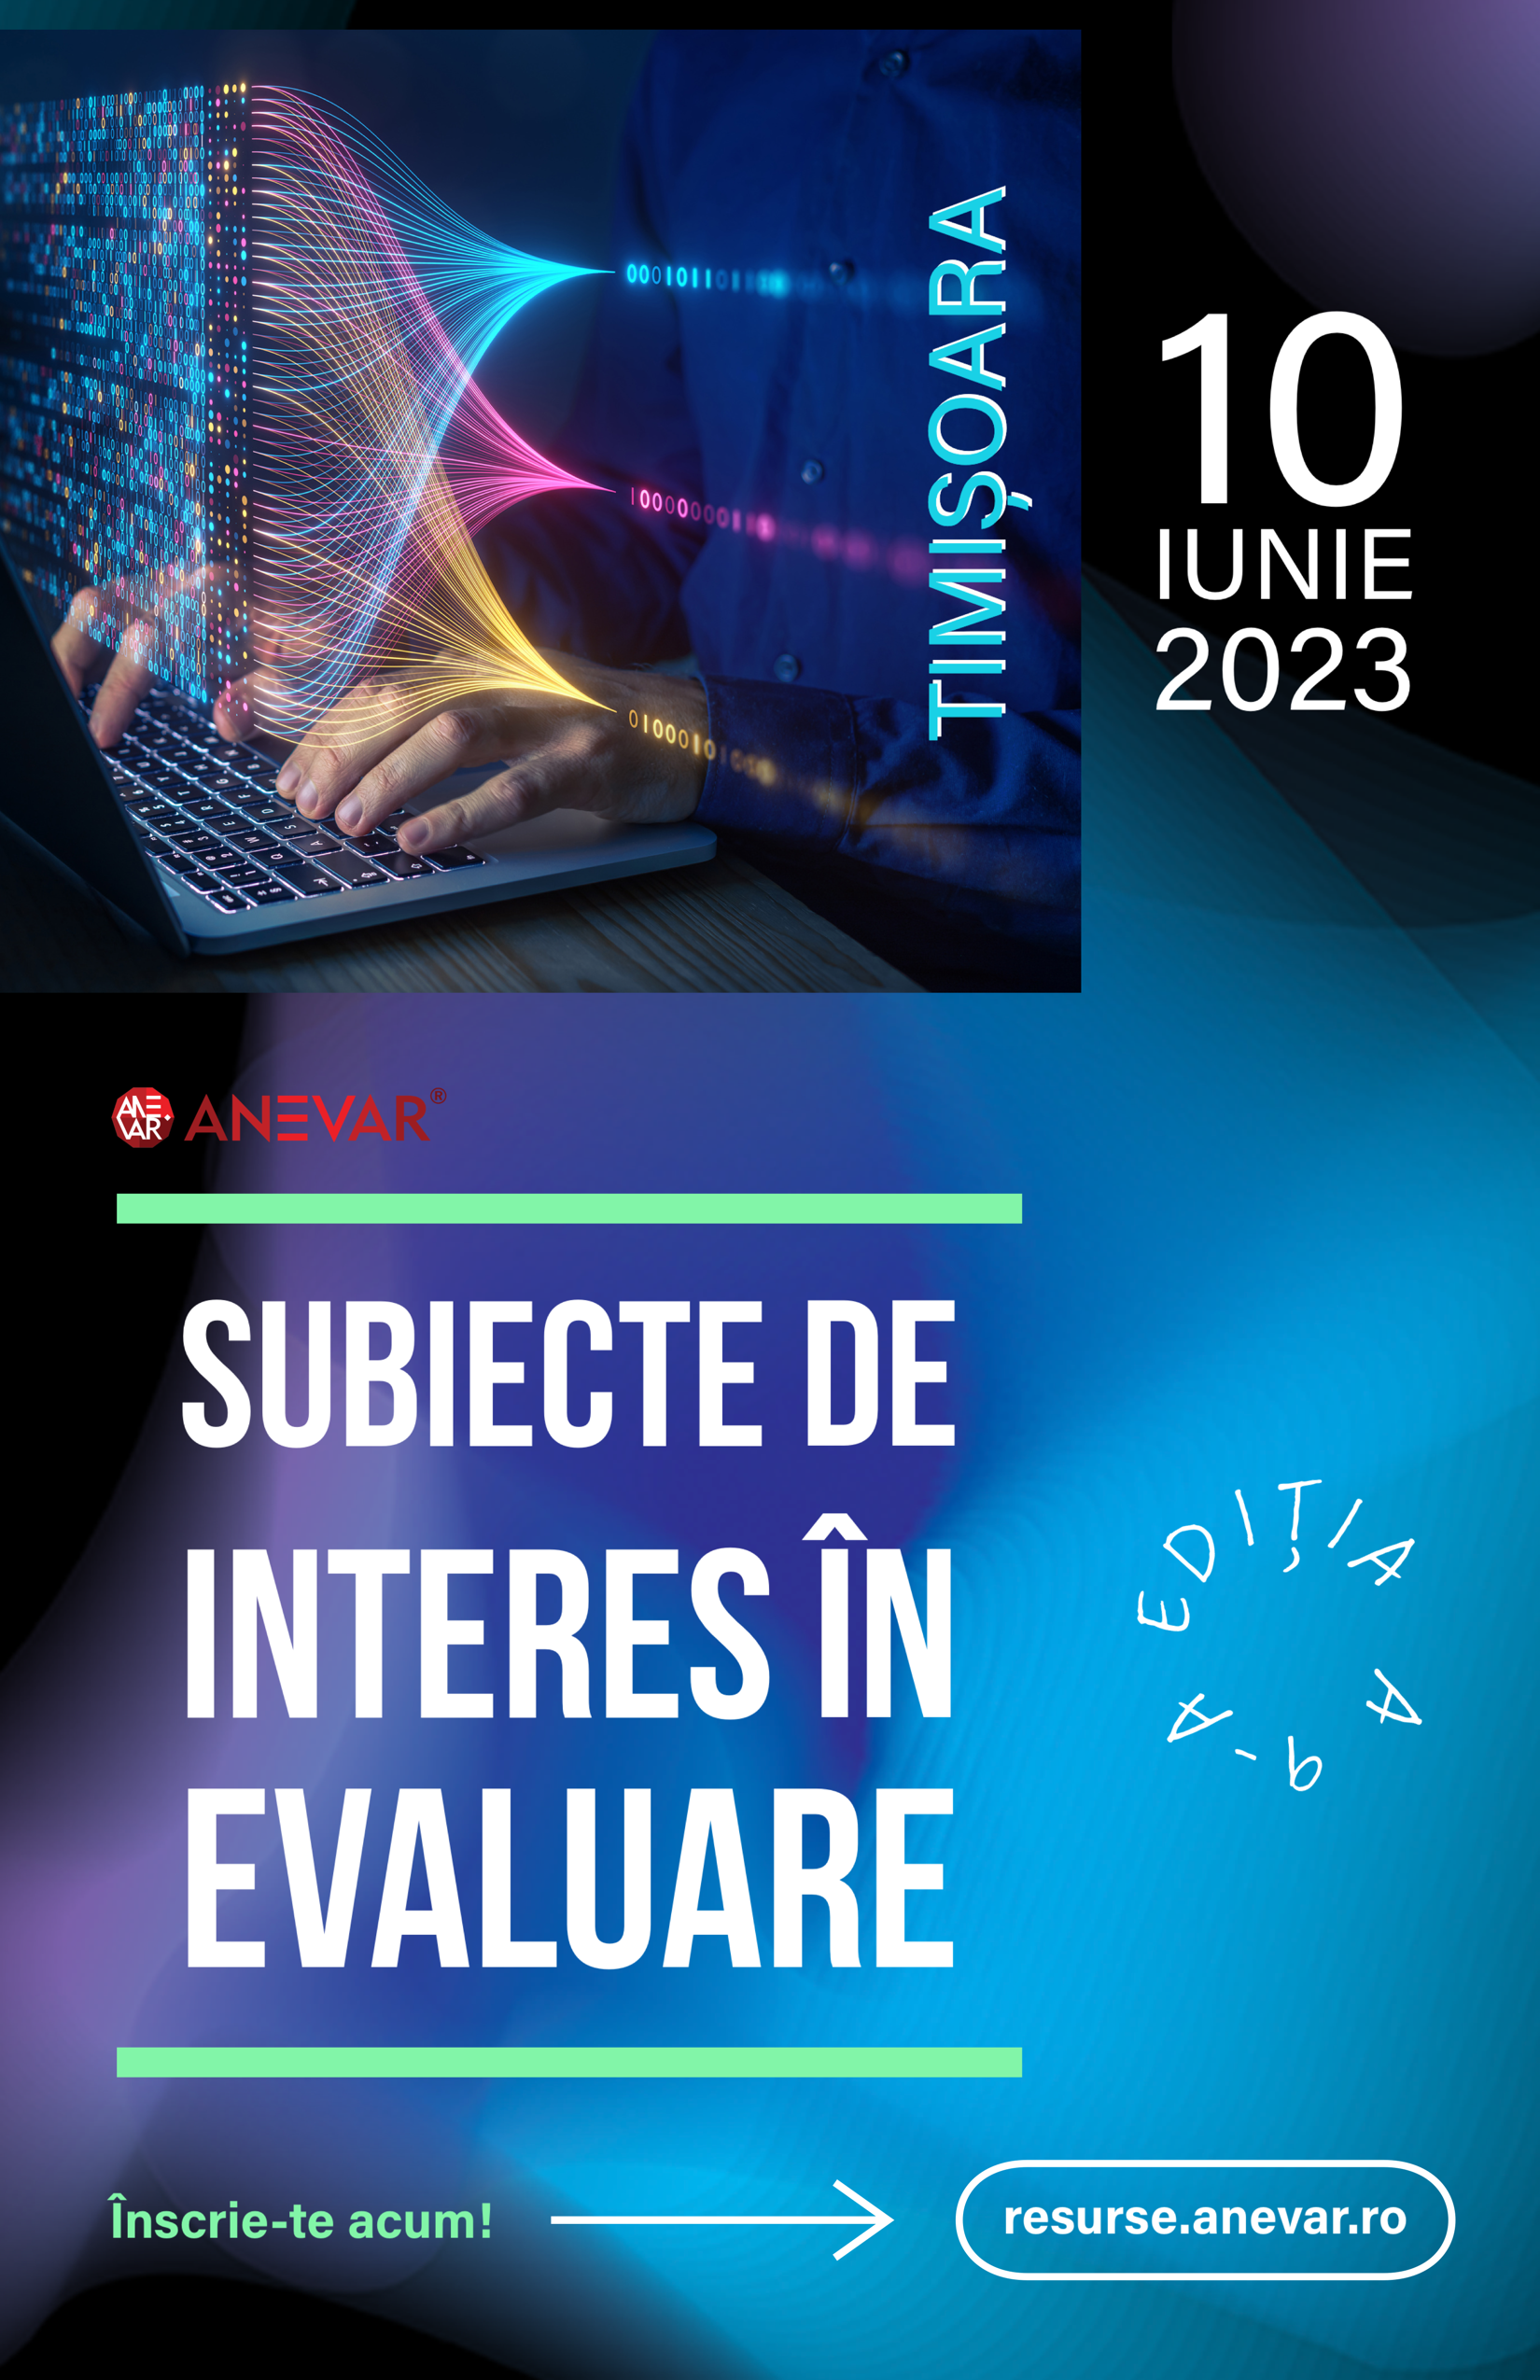 Conferința „Subiecte de interes în evaluare” - Hotel Continental, Timișoara - 10 iunie 2023, ora 09:00